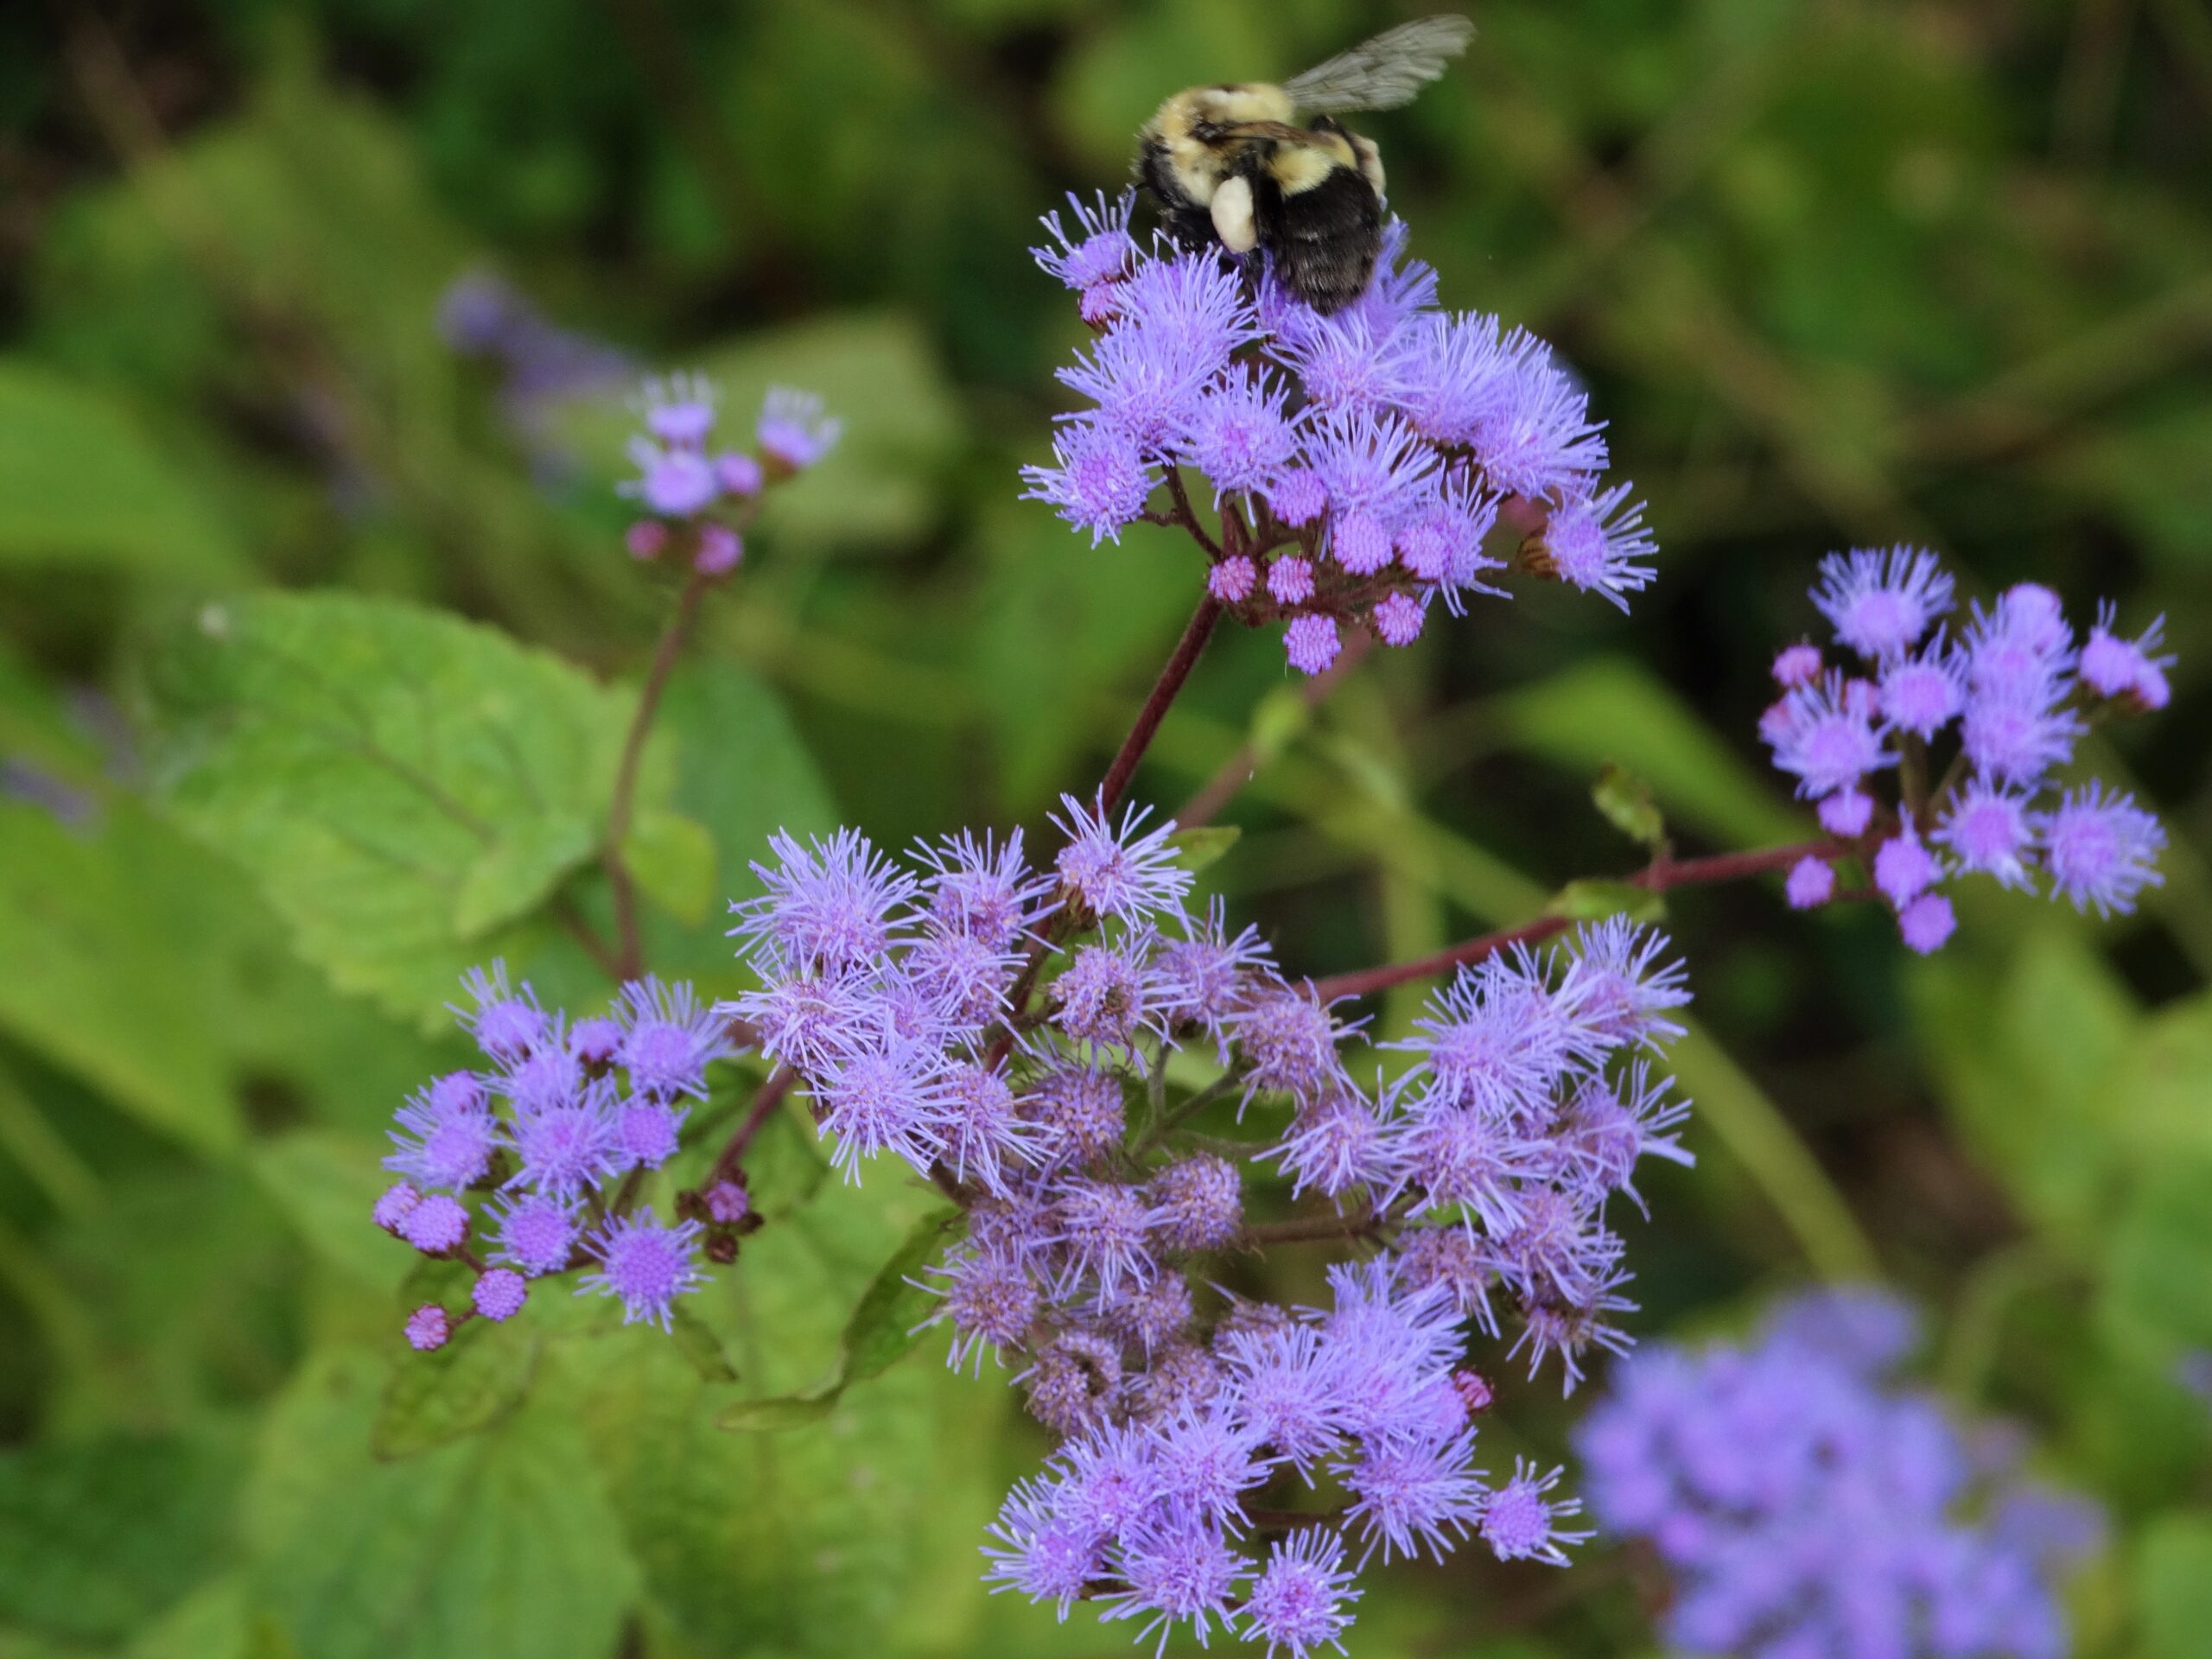 Bee on Blumist wildflower